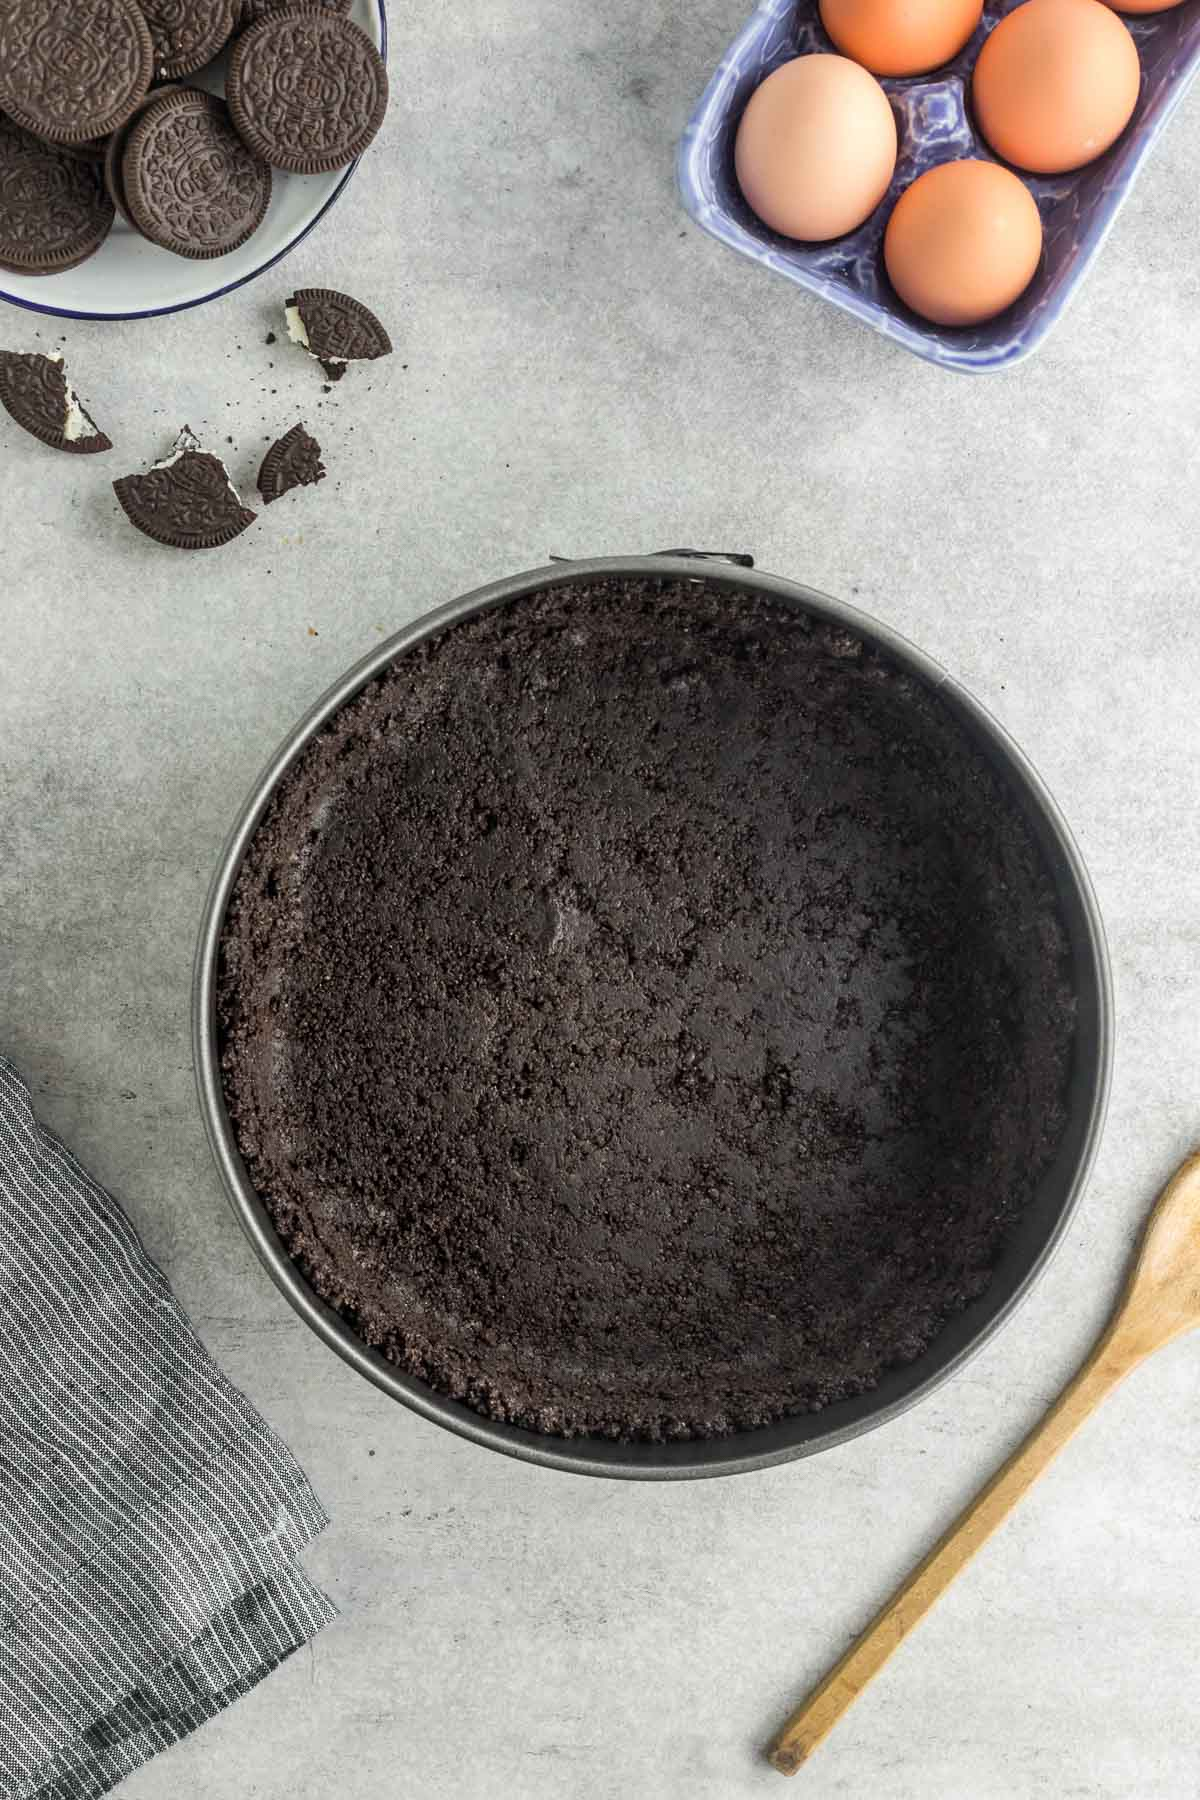 Oreo cookie crust in springform pan